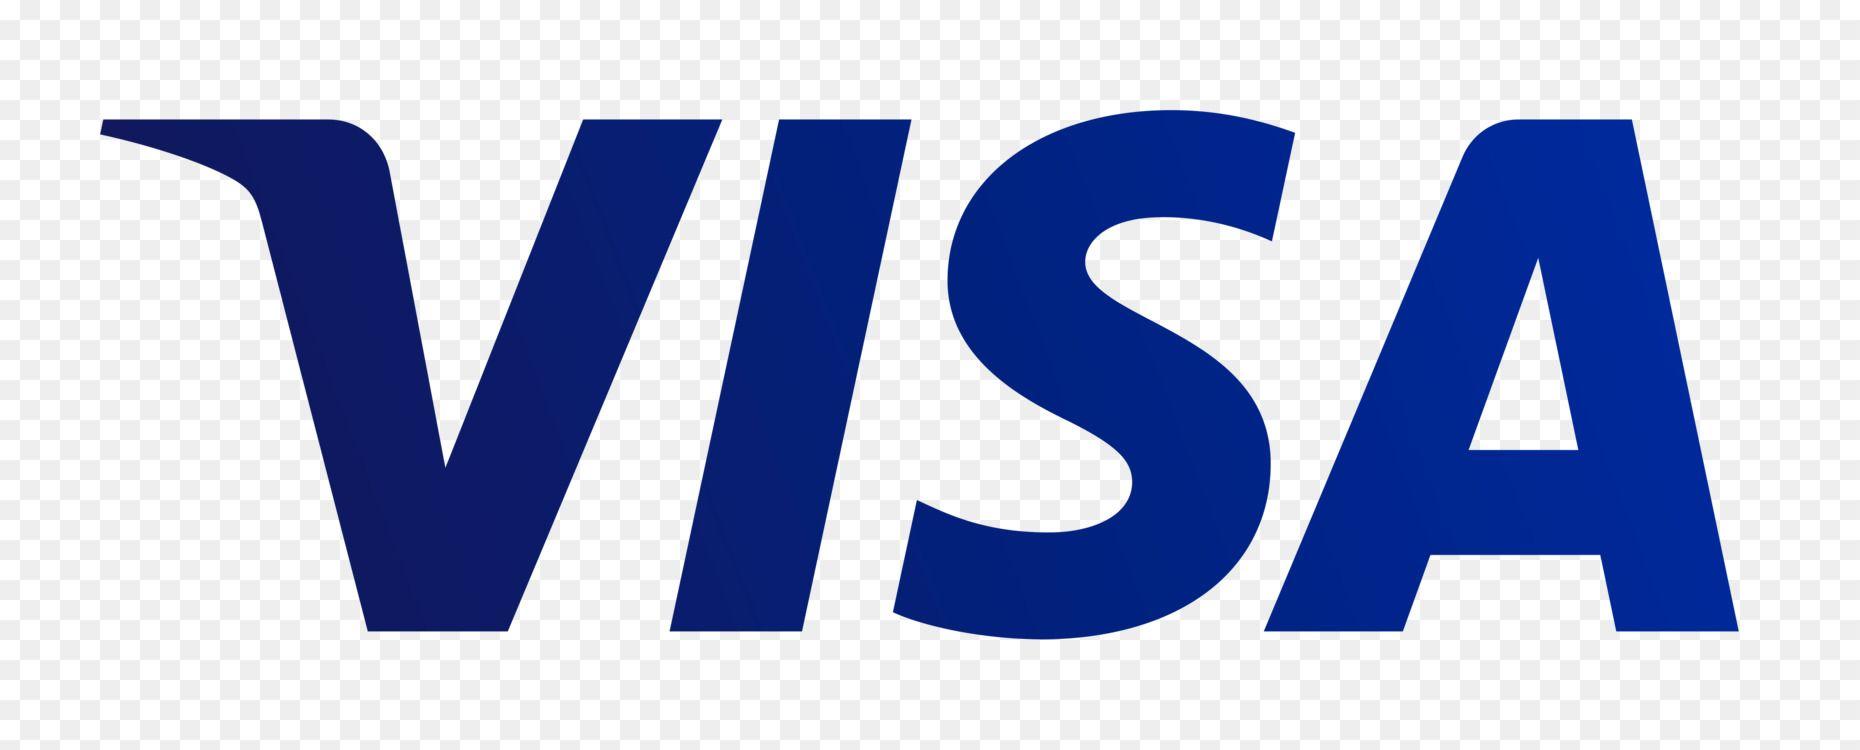 Visa Credit Card Logo - Visa Mastercard Credit card Debit card Plus Free PNG Image - Visa ...